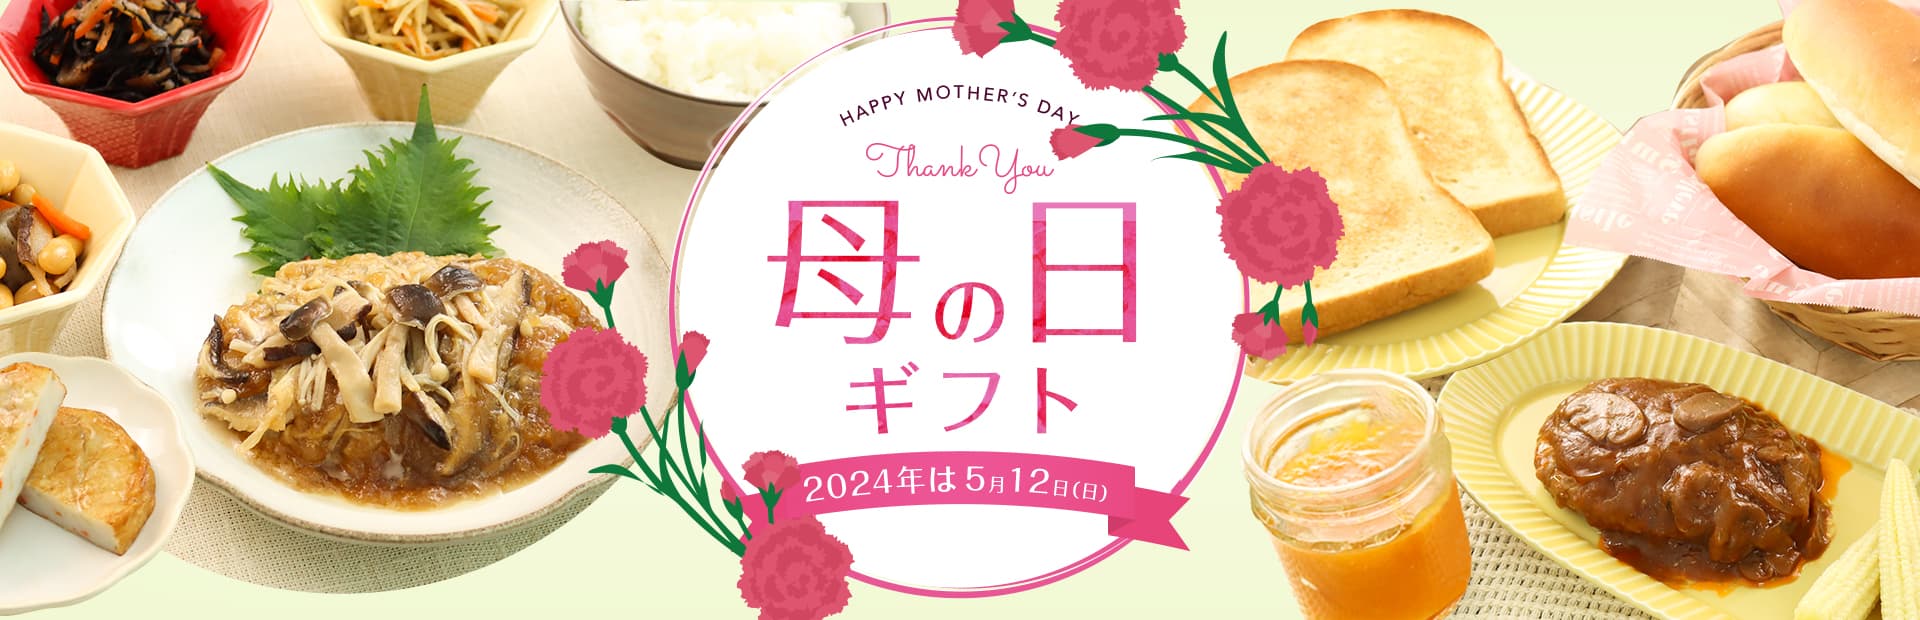 知久屋｜[母の日ギフト]大好きなお母さんへ感謝の気持ちを伝えましょう。からだにやさしいお惣菜で知久屋がお手伝いします。